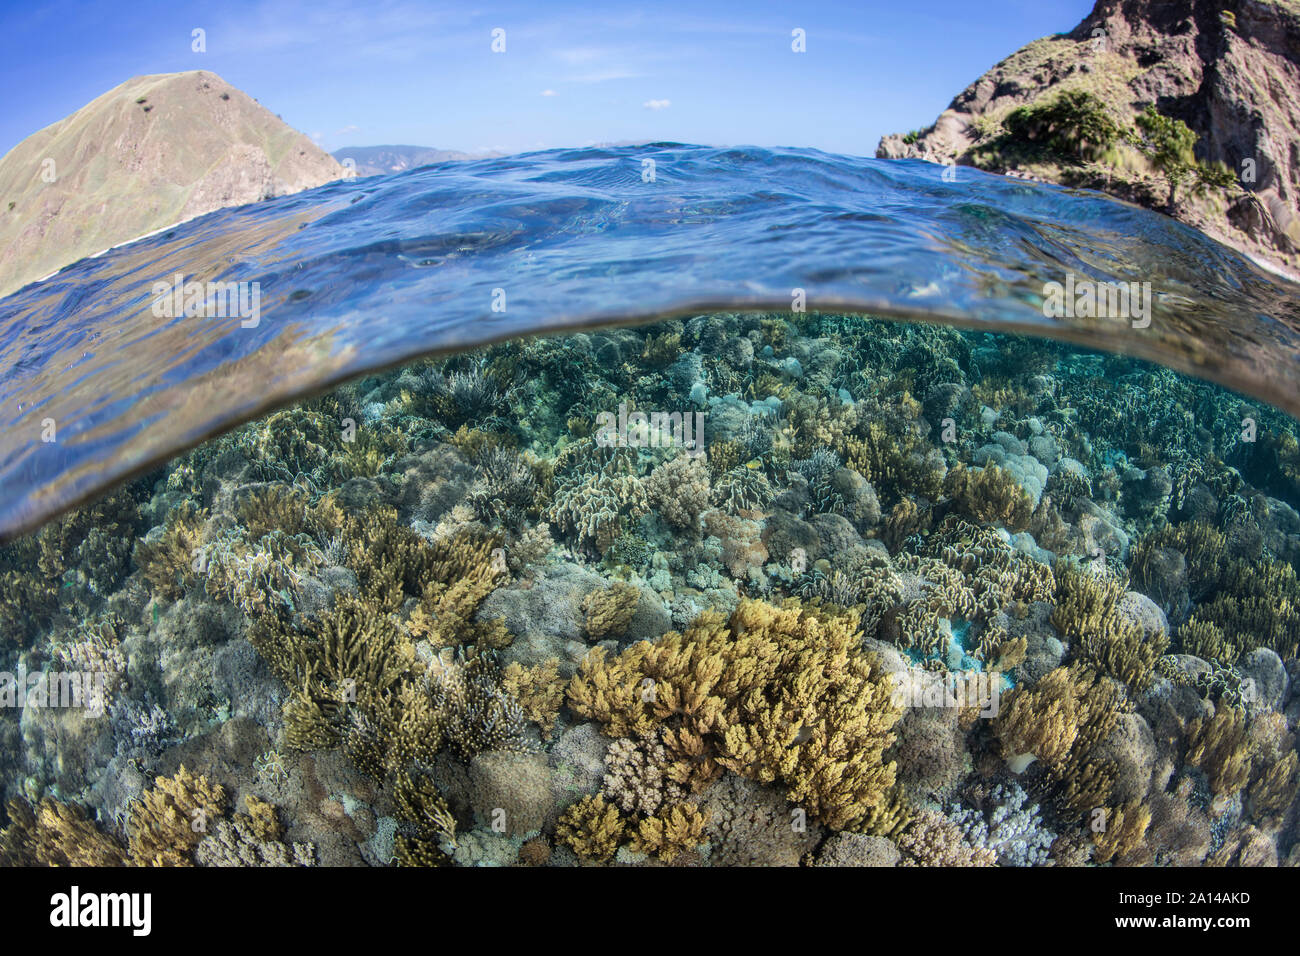 Un beau récif de corail se développe dans le Parc National de Komodo, en Indonésie. Banque D'Images